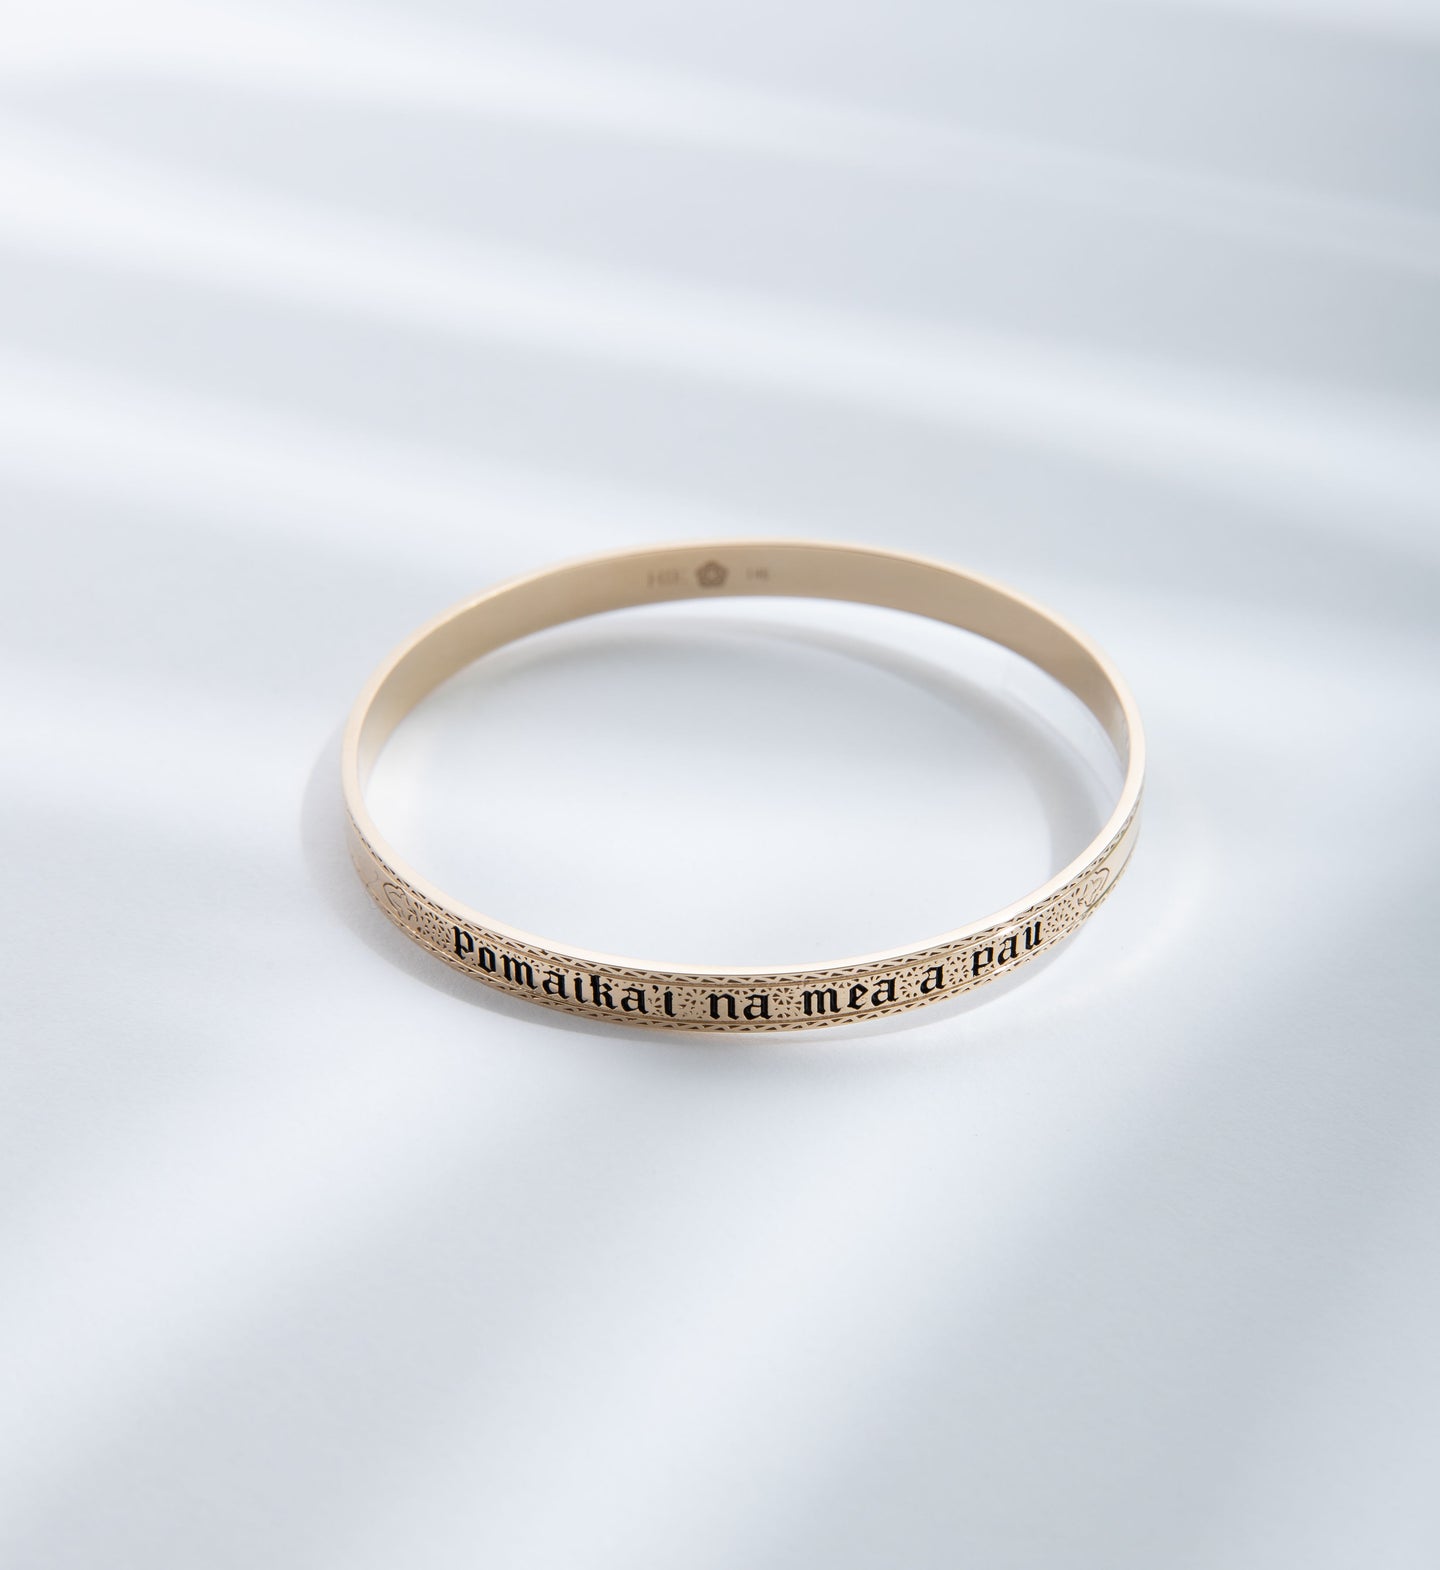 HIE 1881 Fleur De Lis gold bangle bracelet with engraving